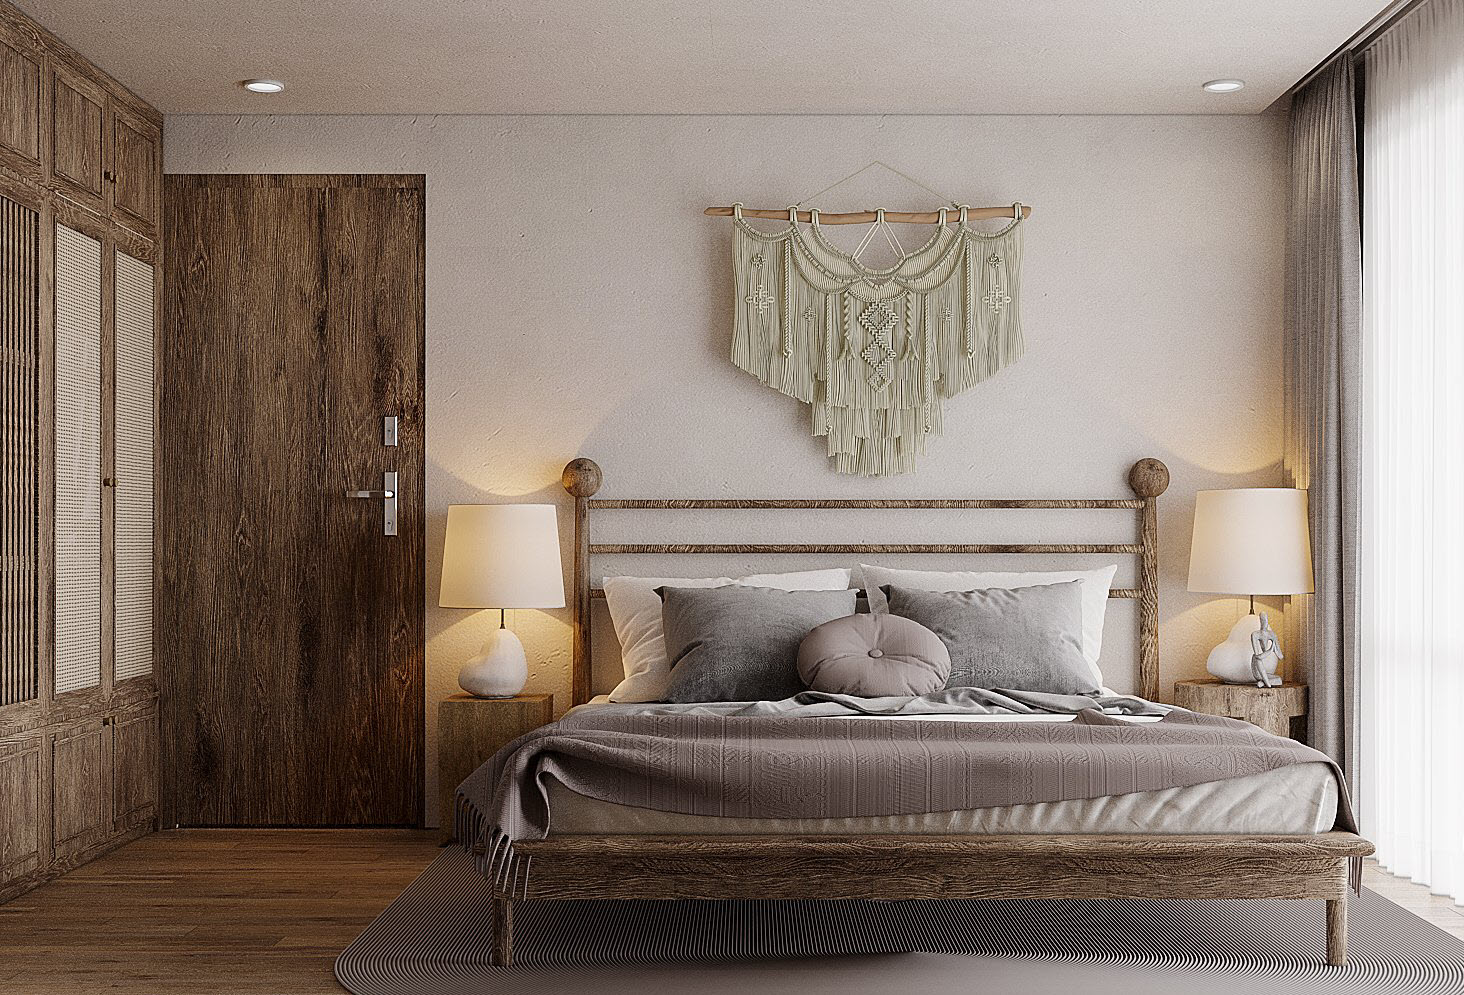 Nội thất gỗ màu xám được sử dụng nhất quán, xuyên suốt mọi không gian chức năng trong căn hộ, được tô điểm thêm bởi ánh đèn vàng ấm áp cùng một vài phụ kiện màu sắc khác.